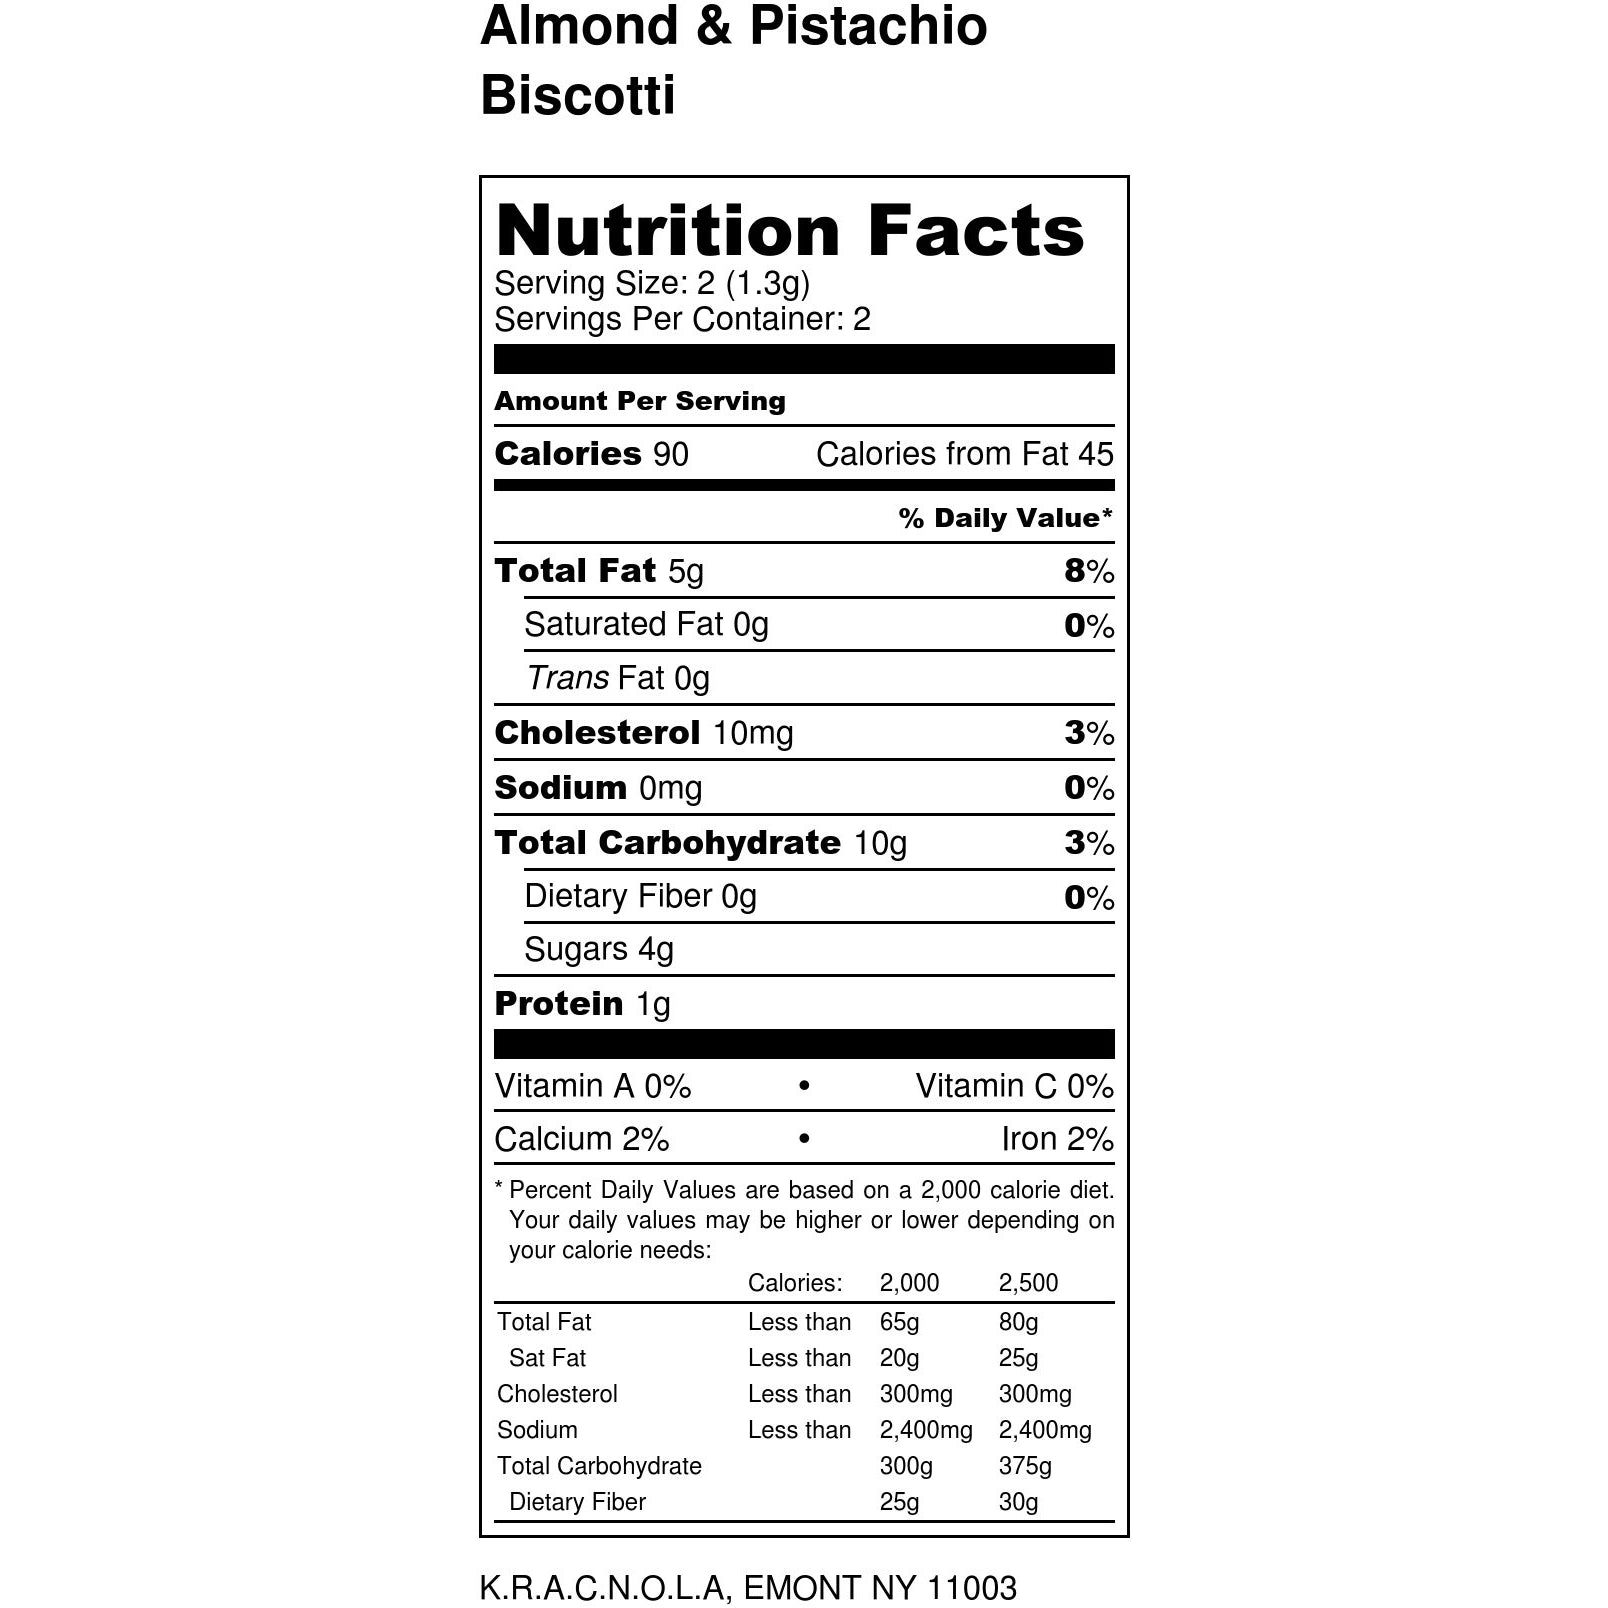 Krac'sCotti /Almond & Pistachio Biscotti